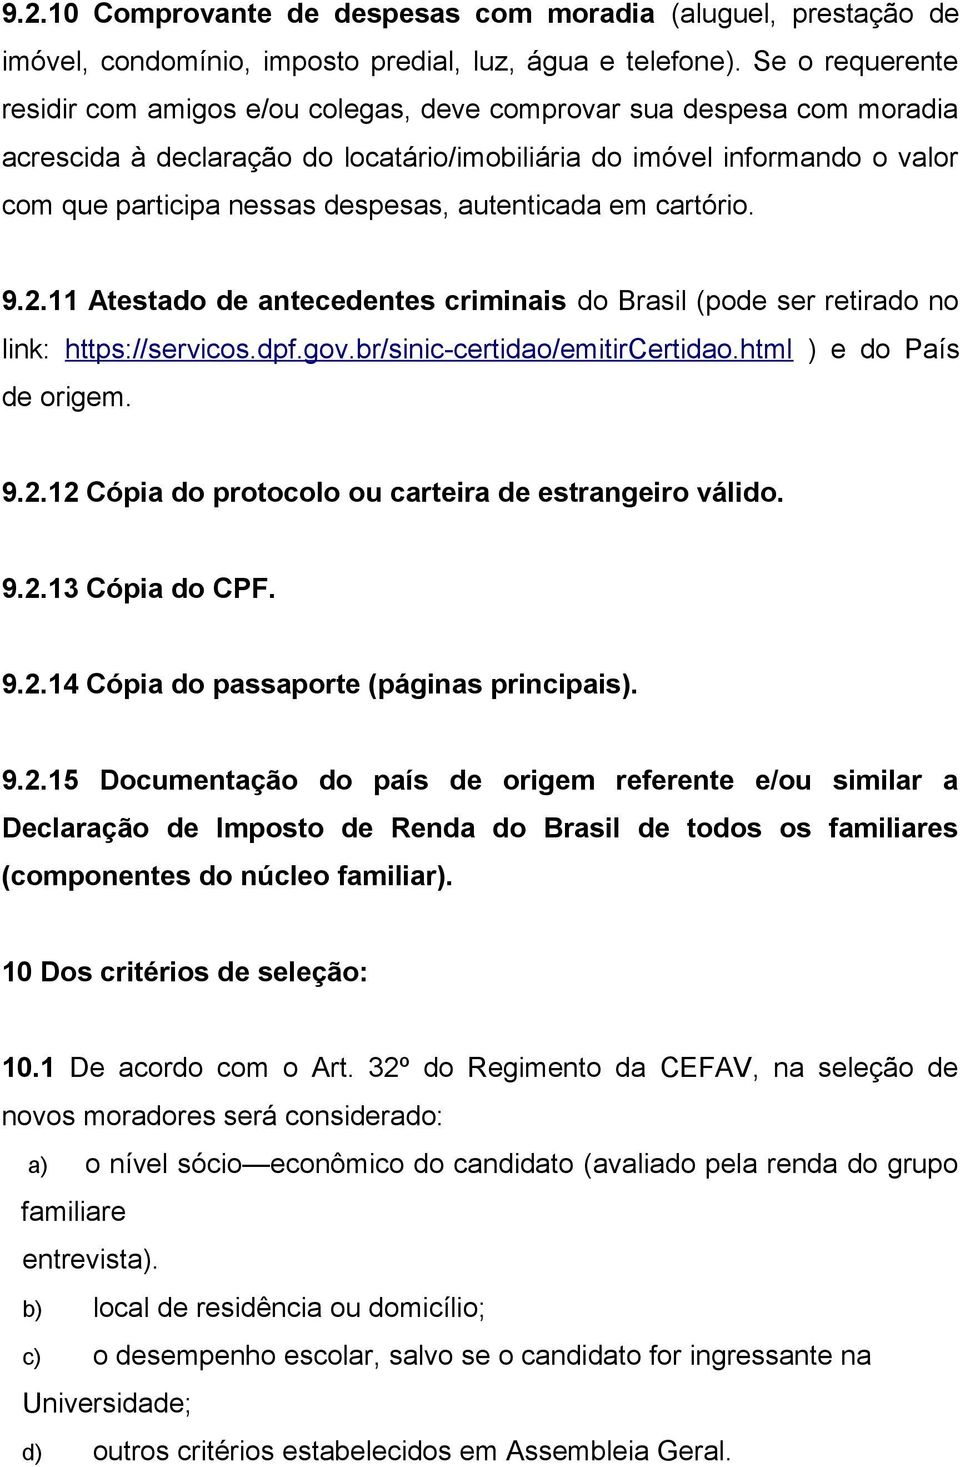 autenticada em cartório. 9.2.11 Atestado de antecedentes criminais do Brasil (pode ser retirado no link: https://servicos.dpf.gov.br/sinic-certidao/emitircertidao.html ) e do País de origem. 9.2.12 Cópia do protocolo ou carteira de estrangeiro válido.